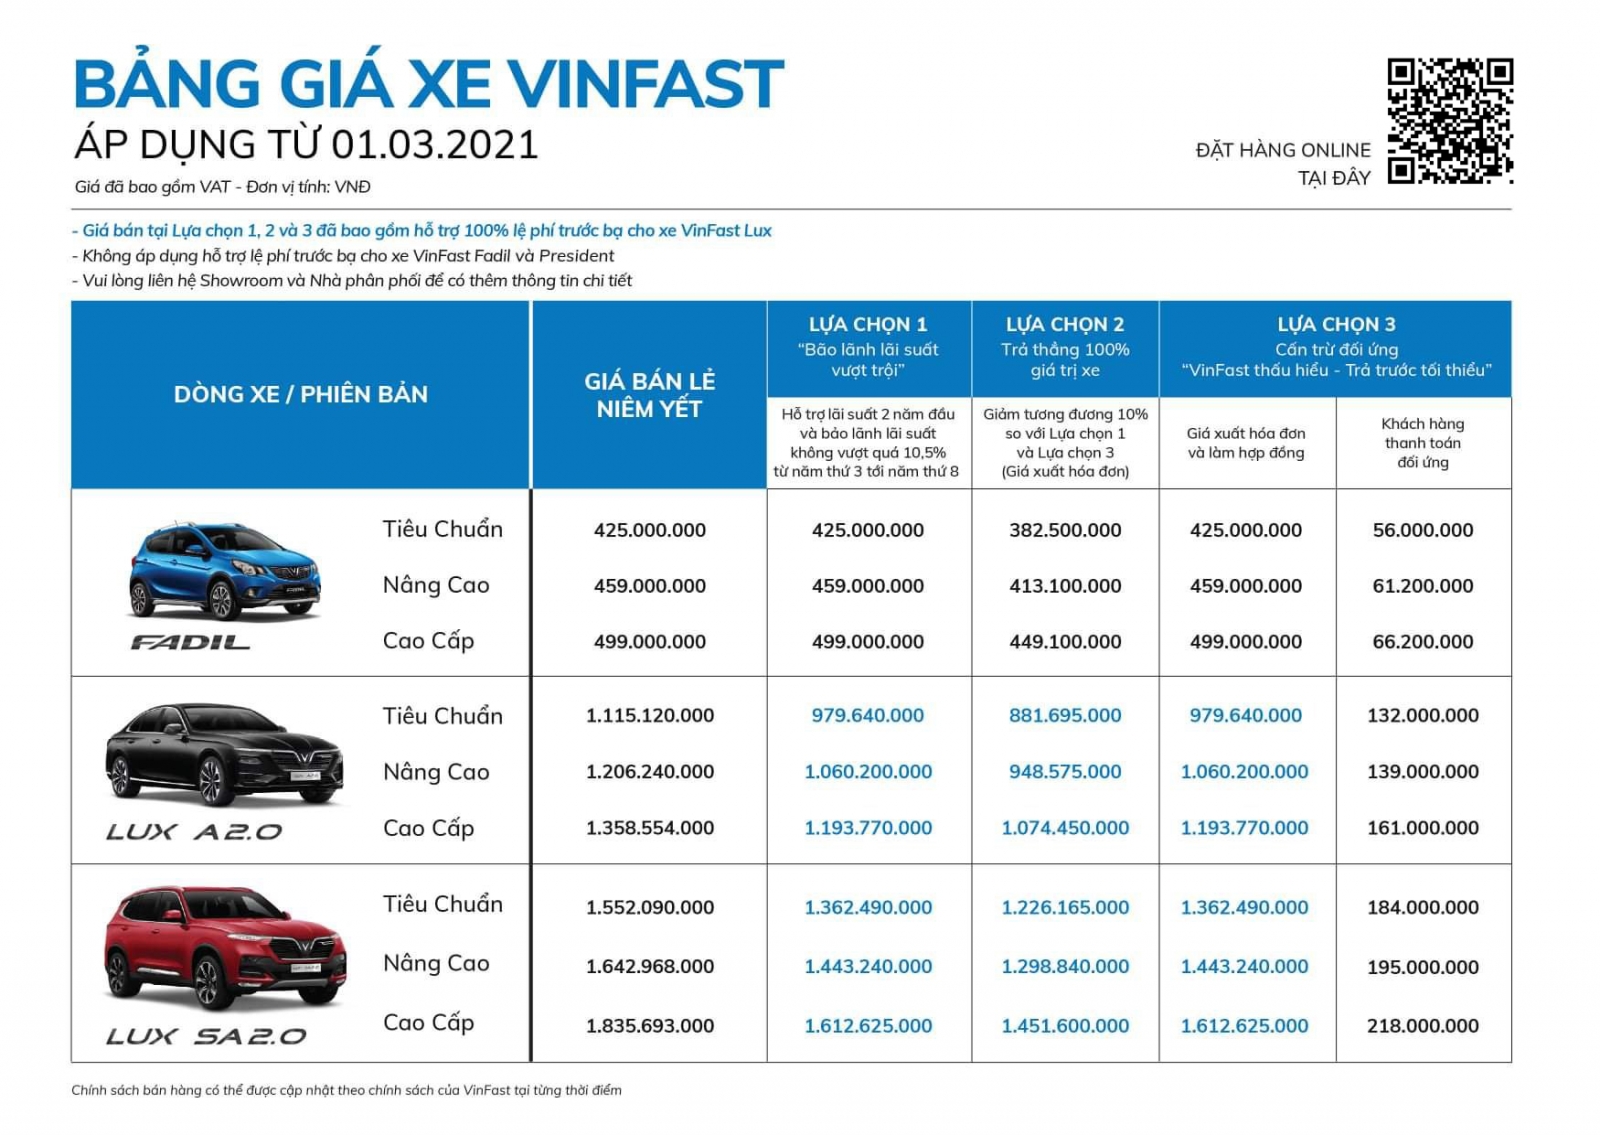 Bảng báo giá xe theo chương trình khuyến mãi VinFast tháng 3 2021